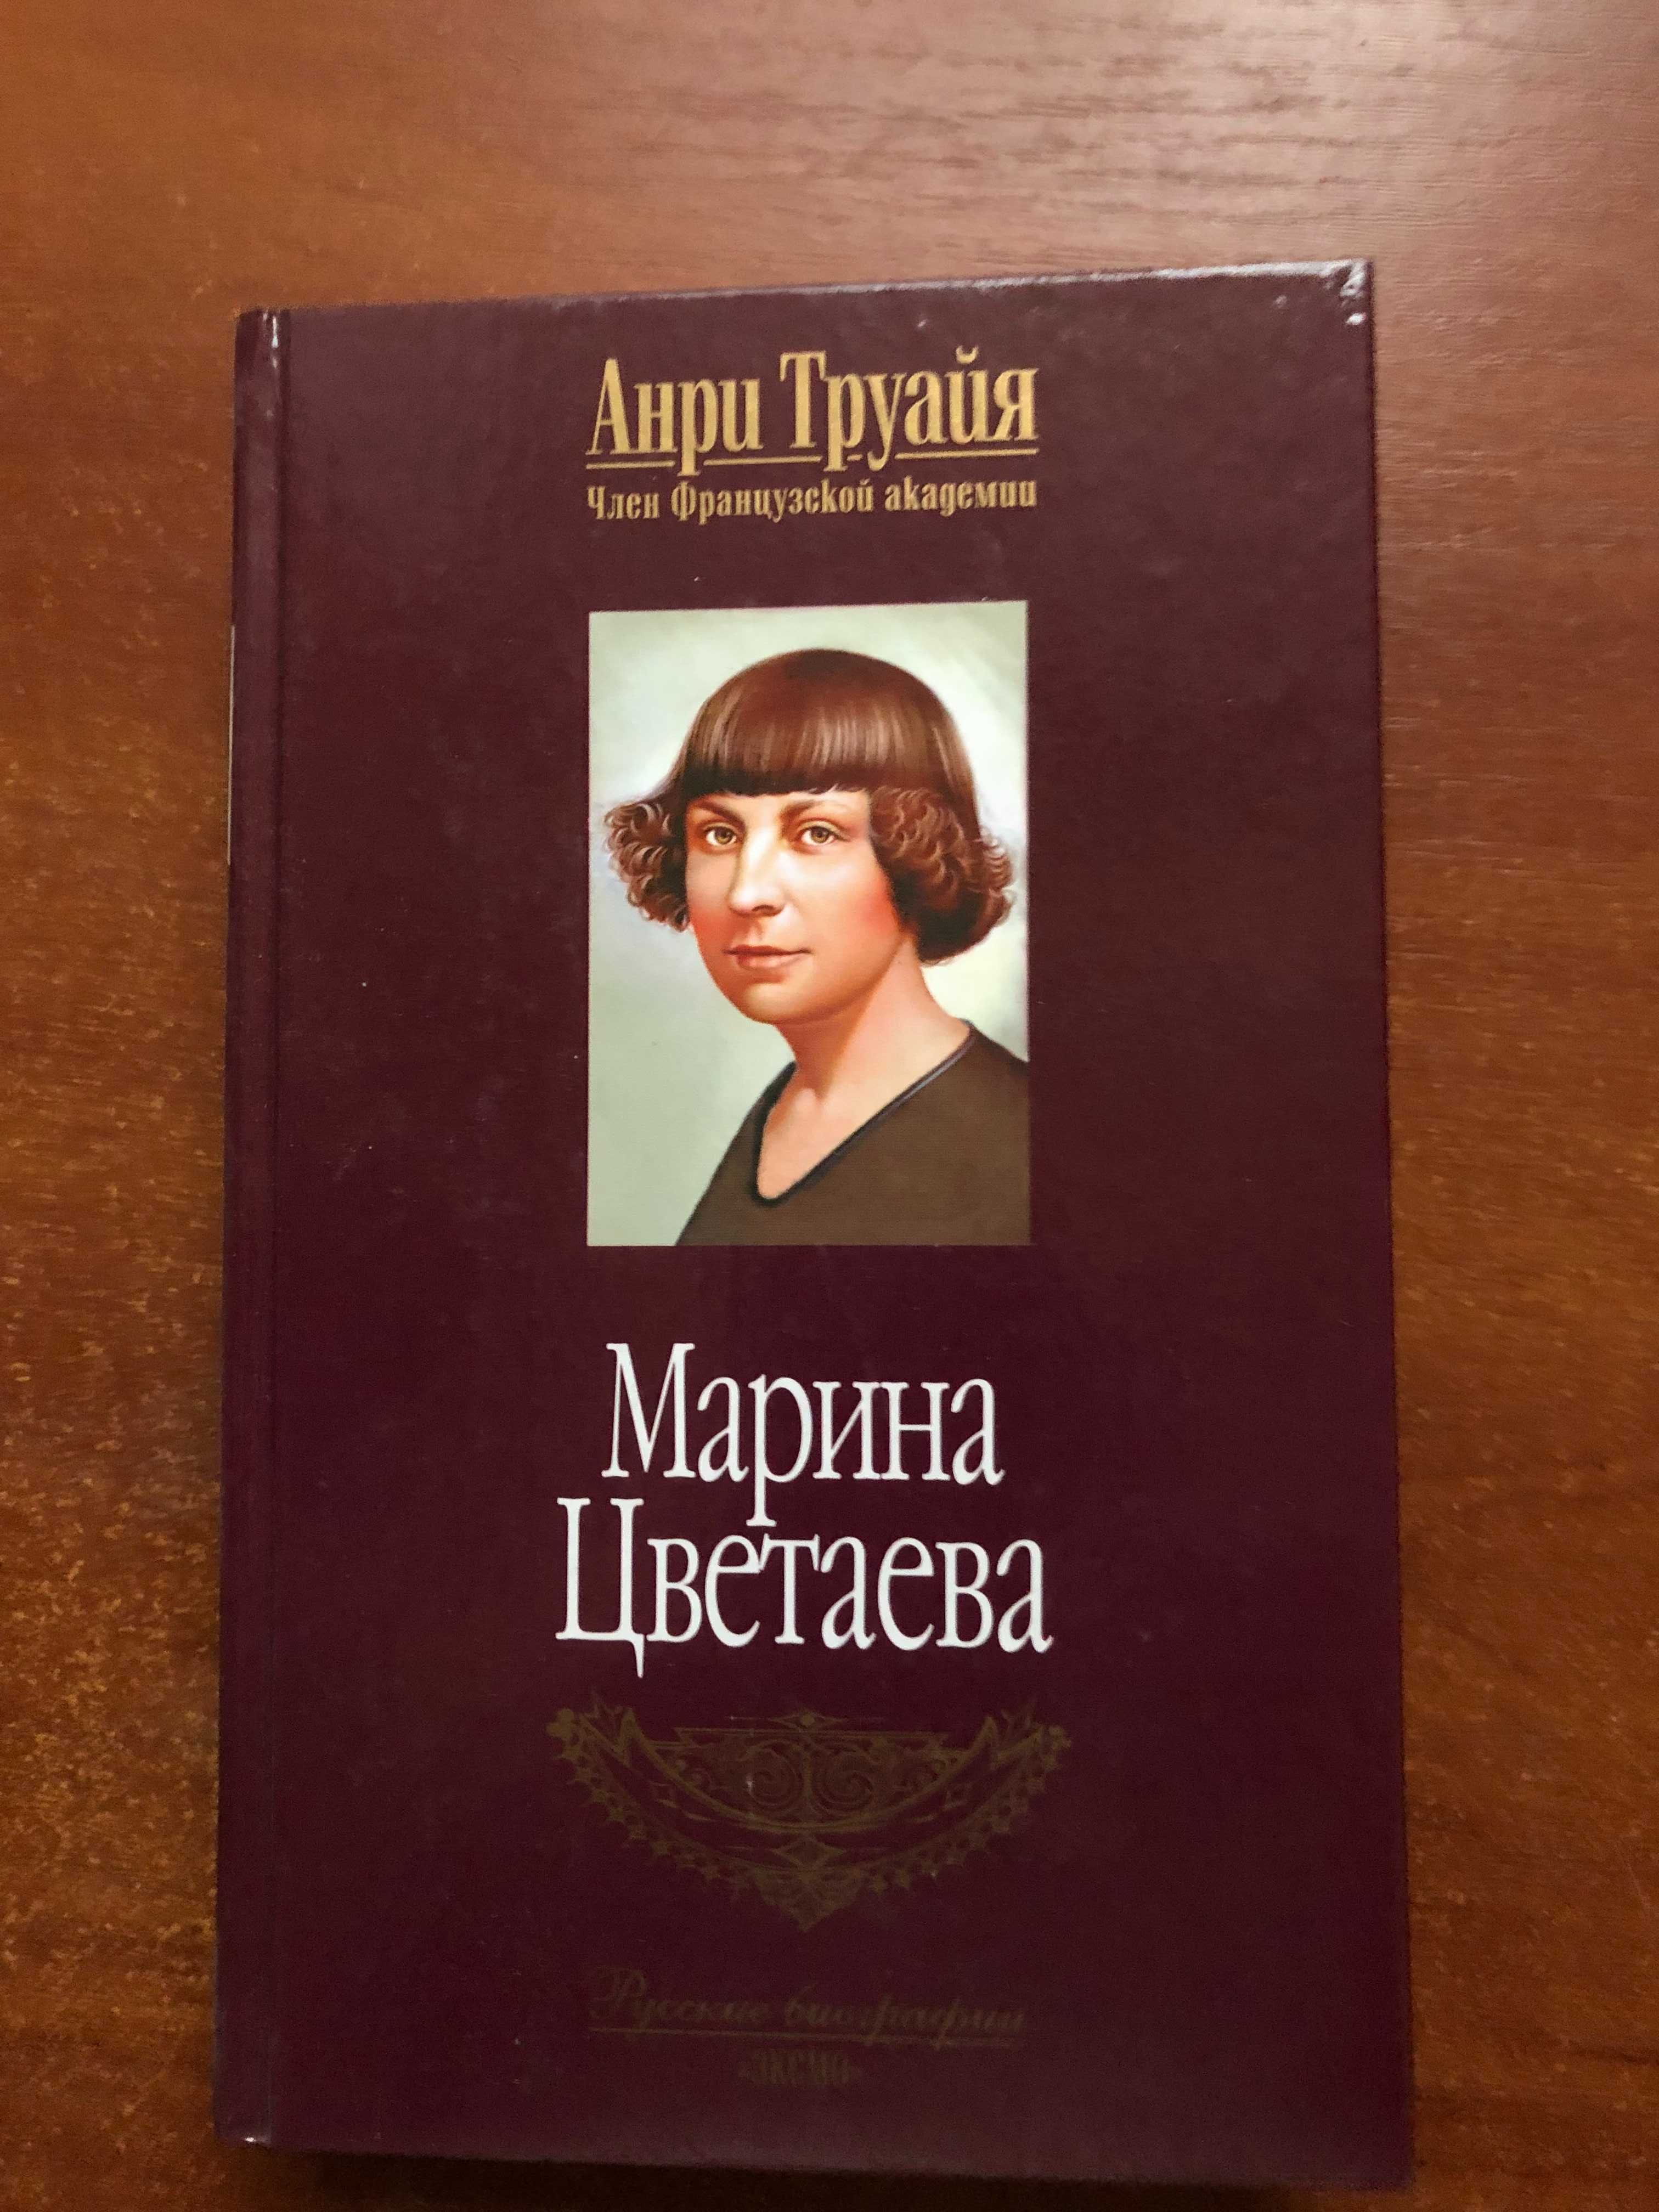 Книги биографии. Марина Цветаева в авторском исследовании Анри Труайя.